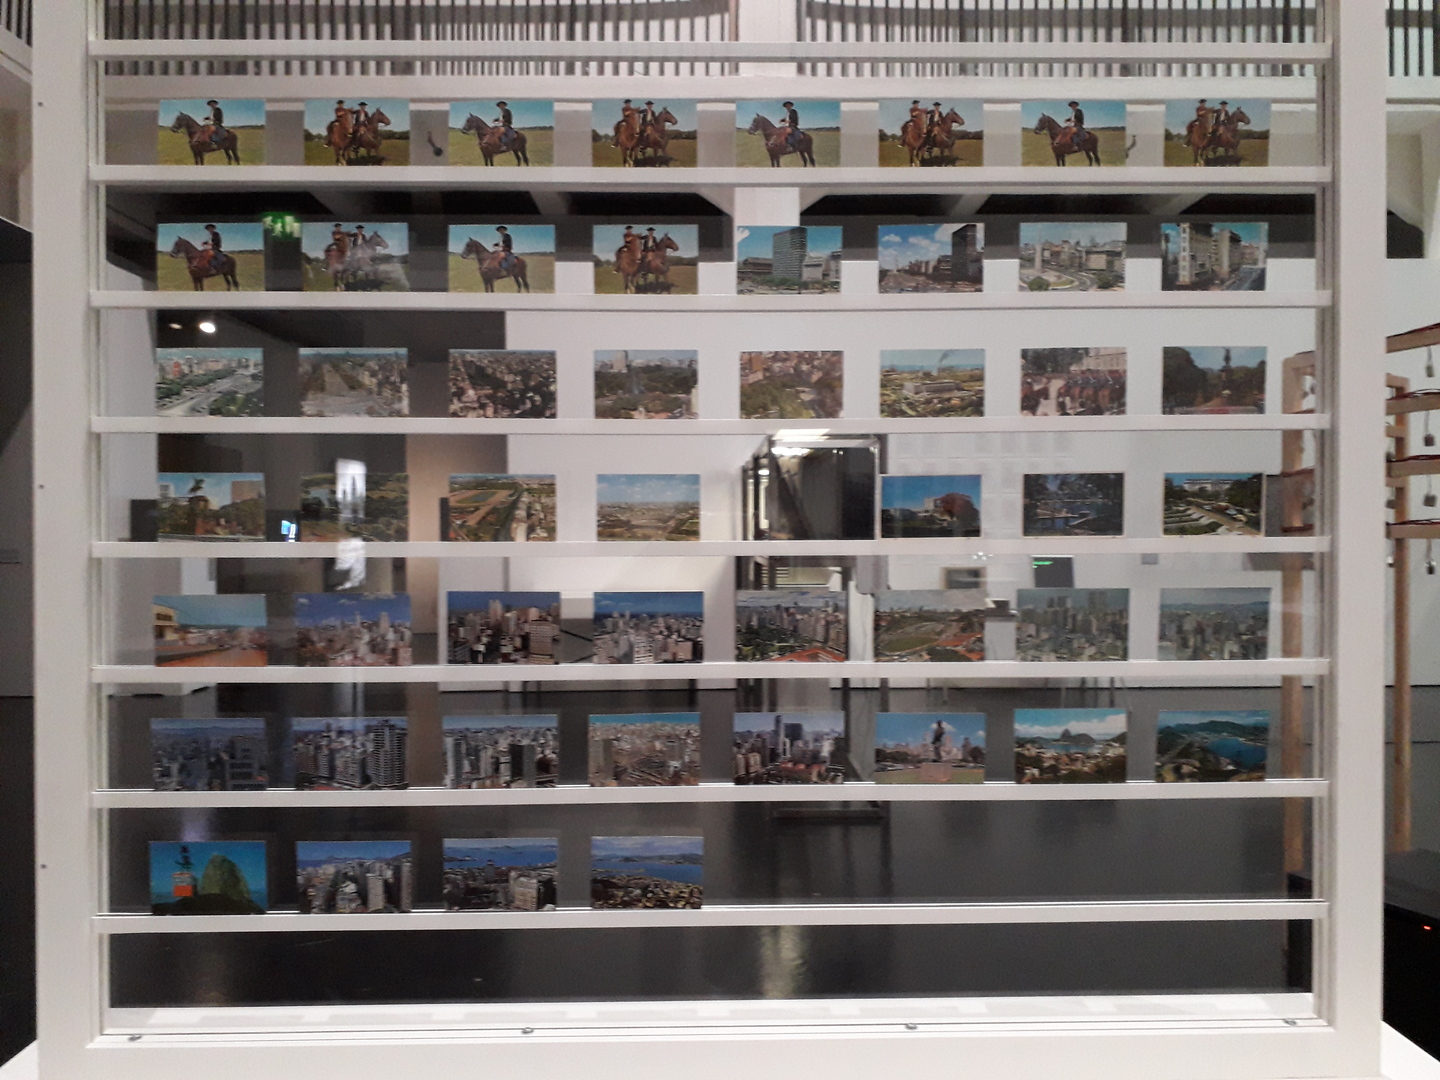 Image 16 : Mosaïque de cartes postales dans une vitrine à la verticale